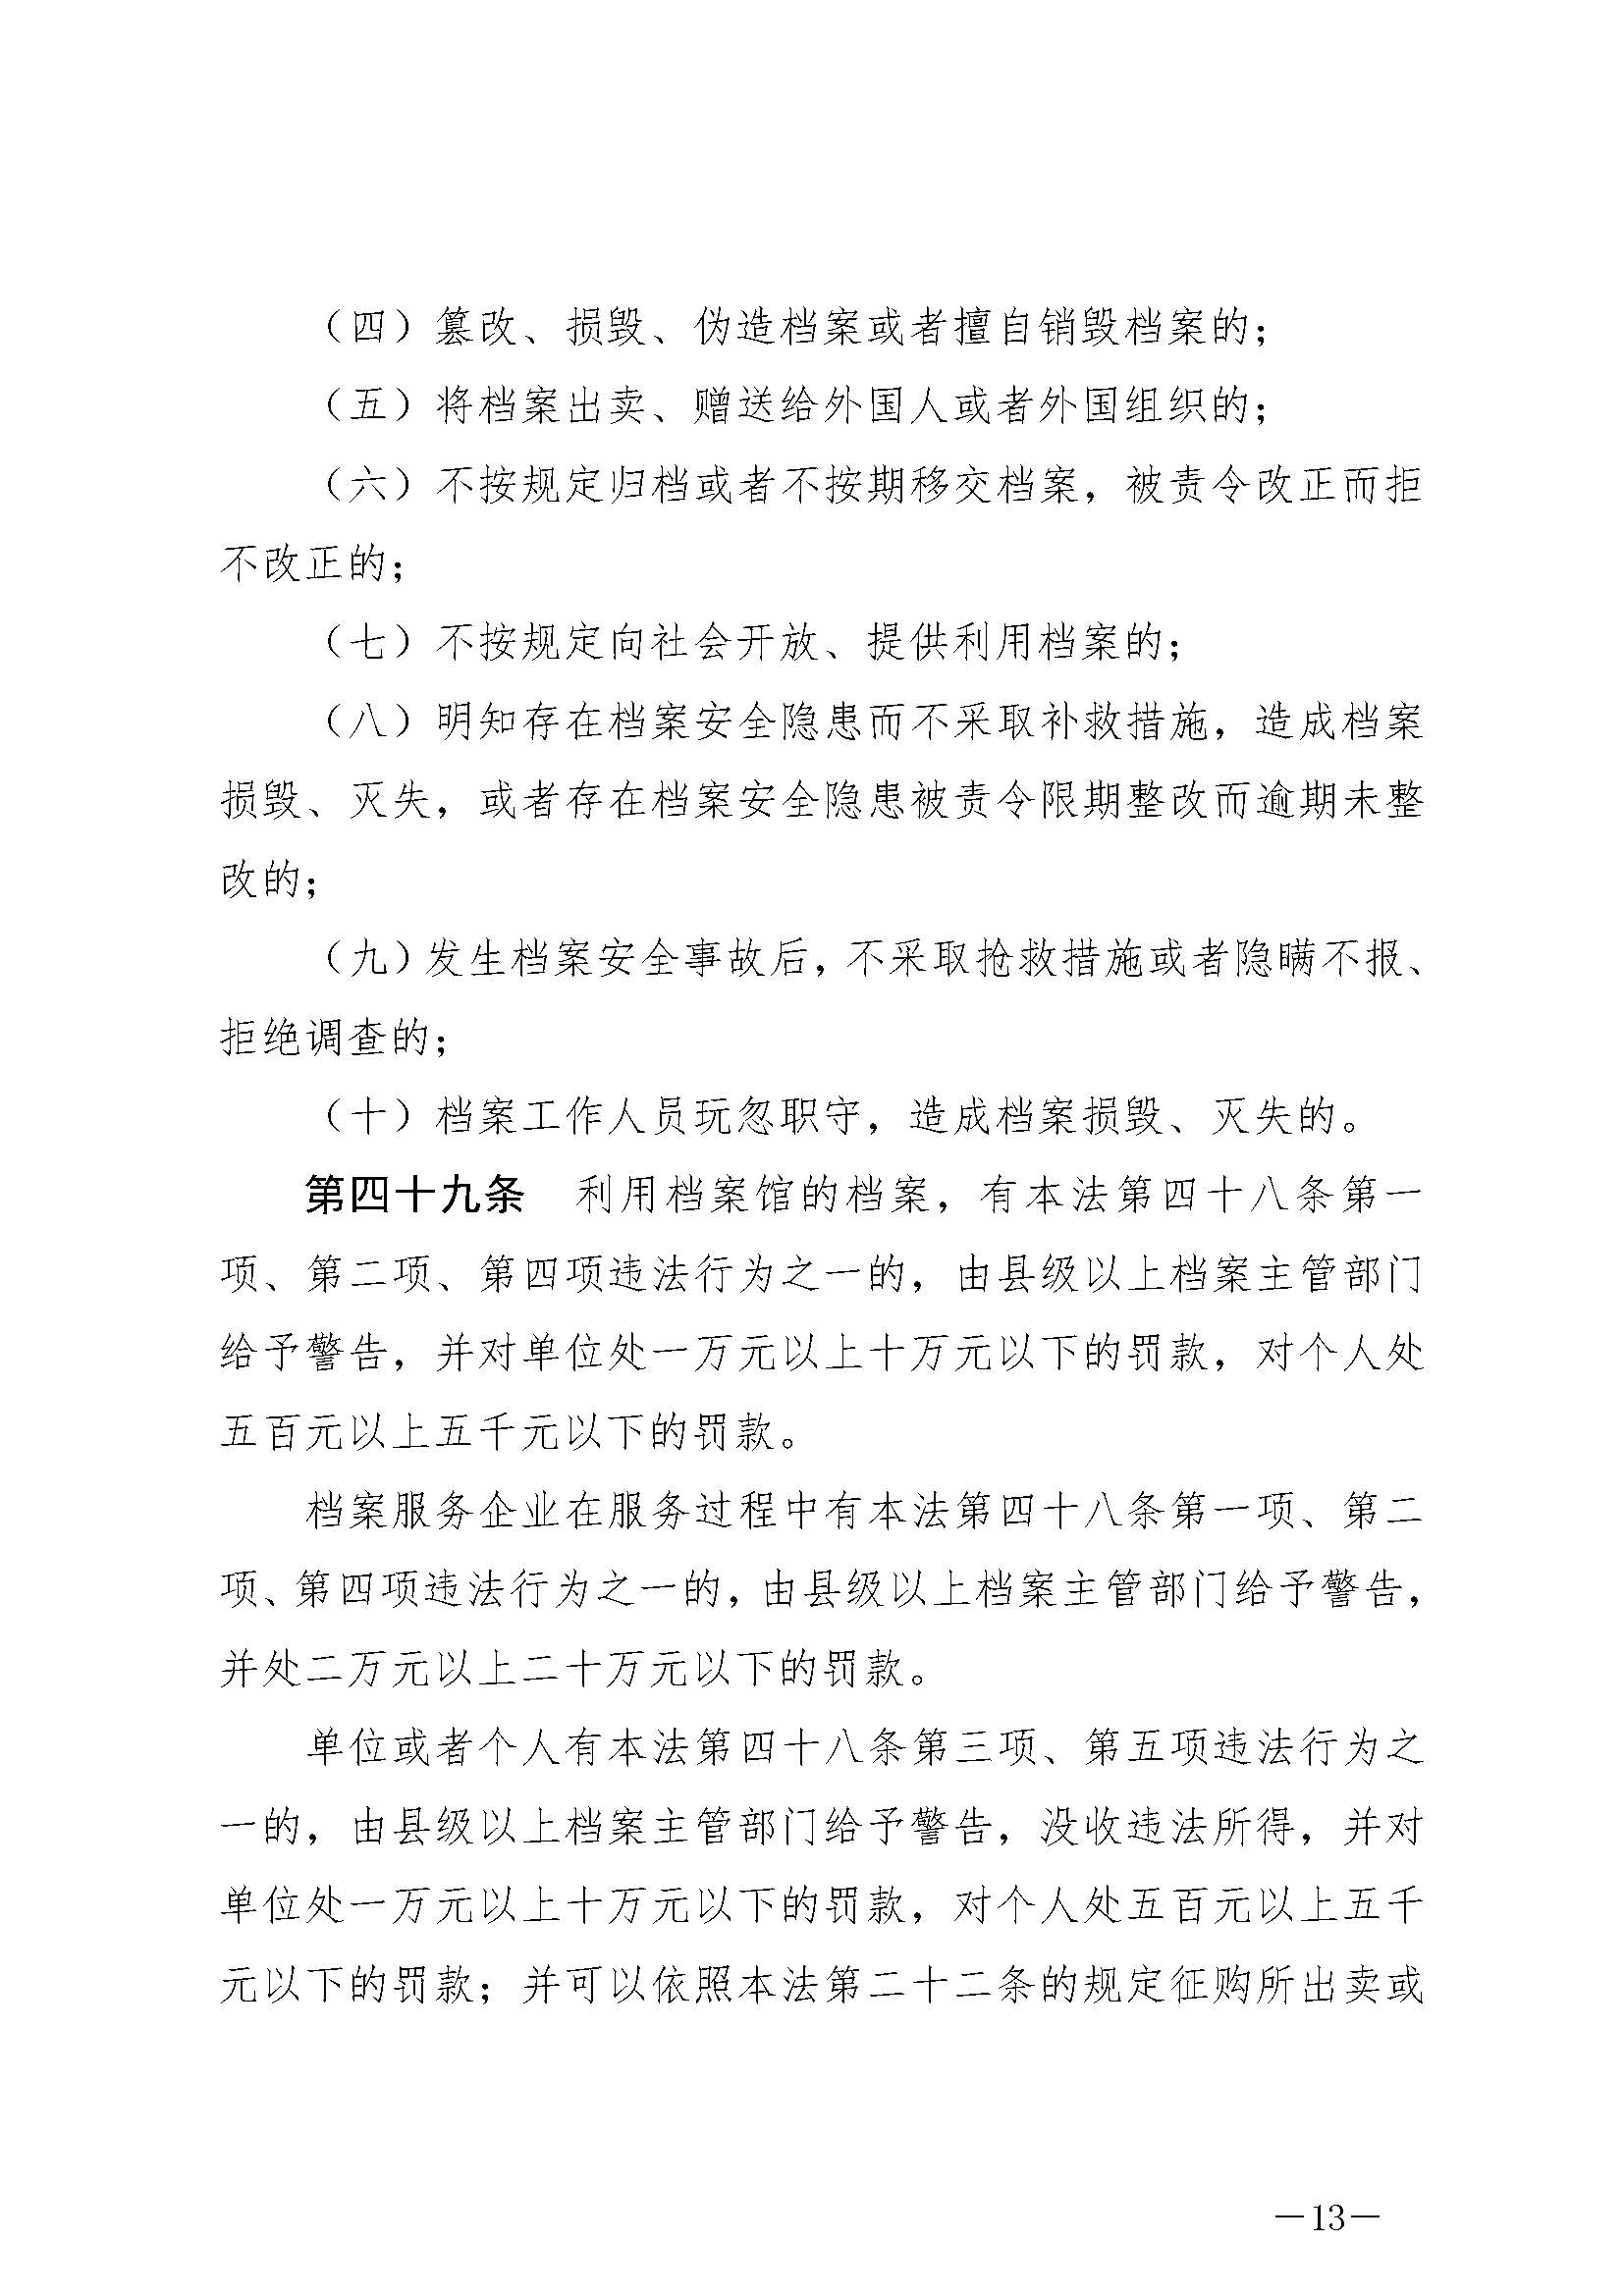 《中华人民共和国档案法》_页面_13.jpg